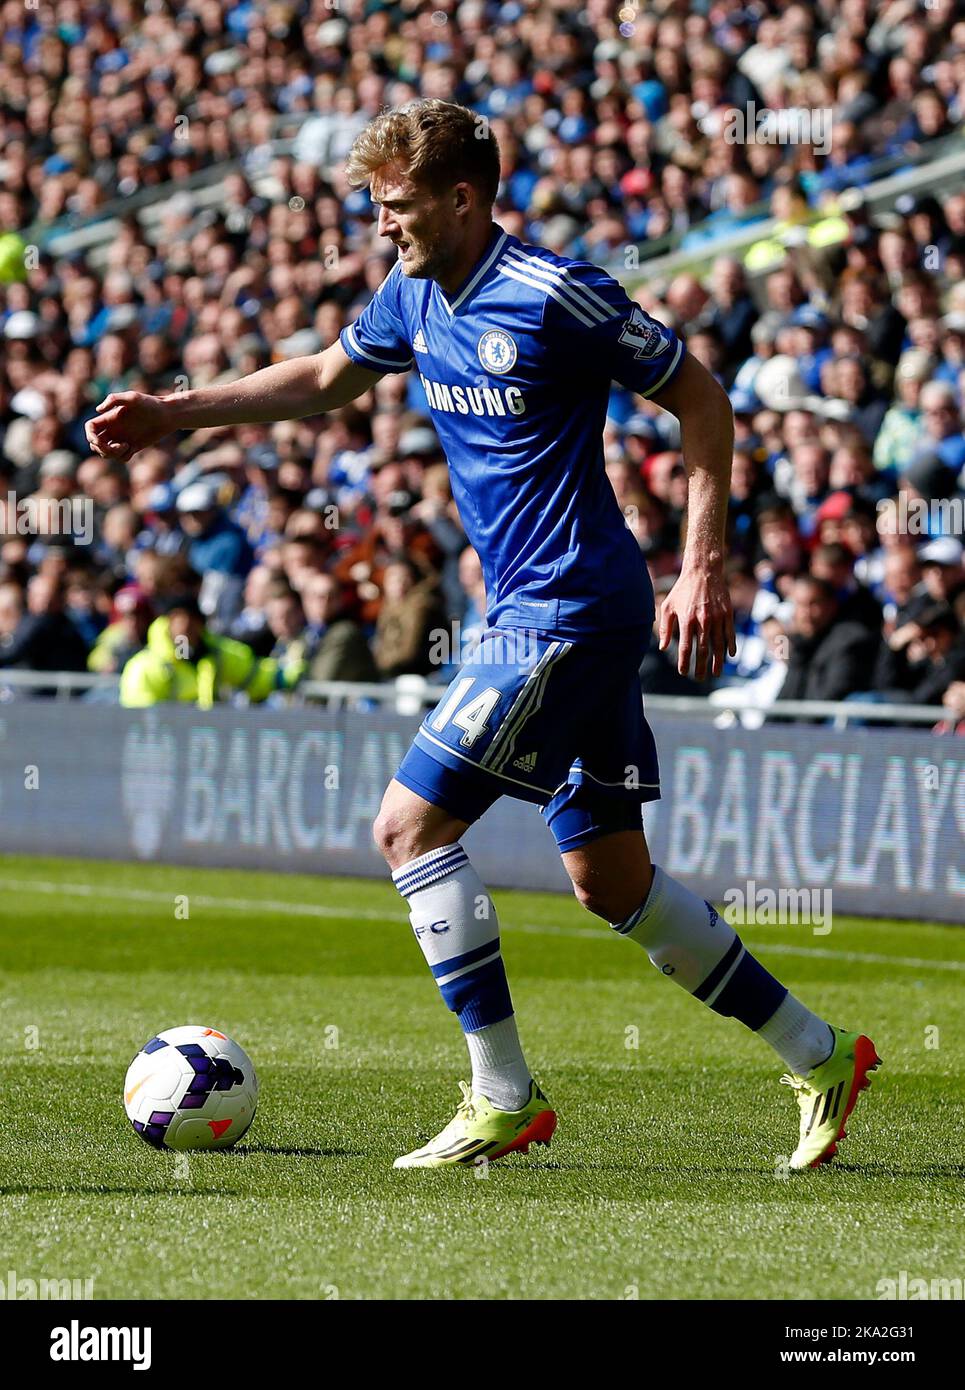 11th mai 2014 - Barclays Premier League - Cardiff City / Chelsea - Andre Schurrle de Chelsea - photo: Paul Roberts/Pathos. Banque D'Images